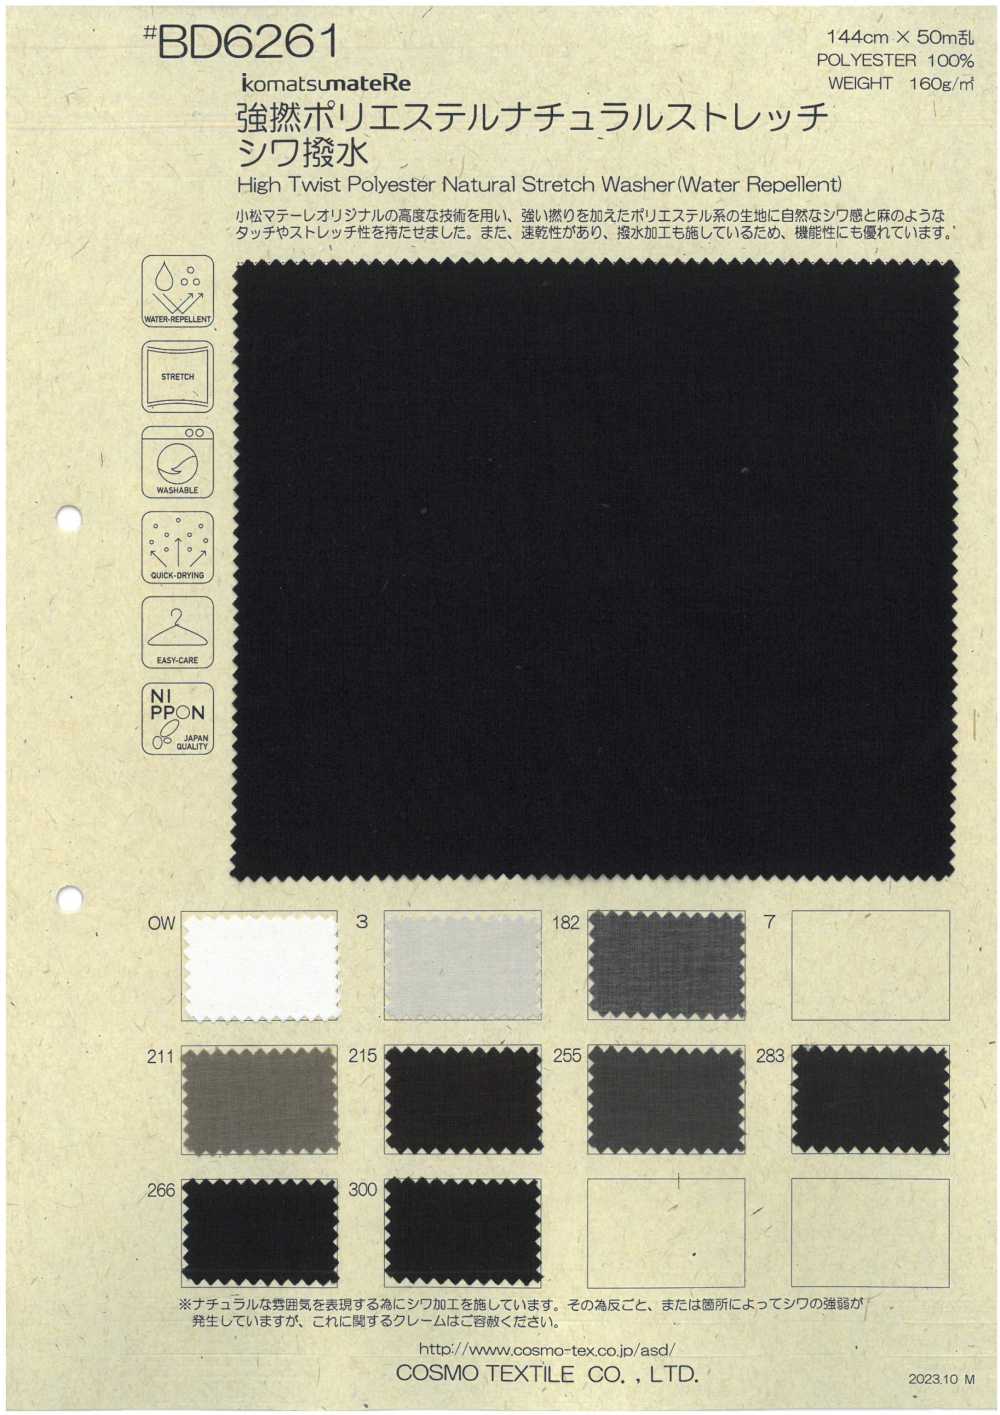 BD6261 Starkes Twist-Polyester, Natürlicher Stretch, Knitterfrei, Wasserabweisend[Textilgewebe] COSMO TEXTILE